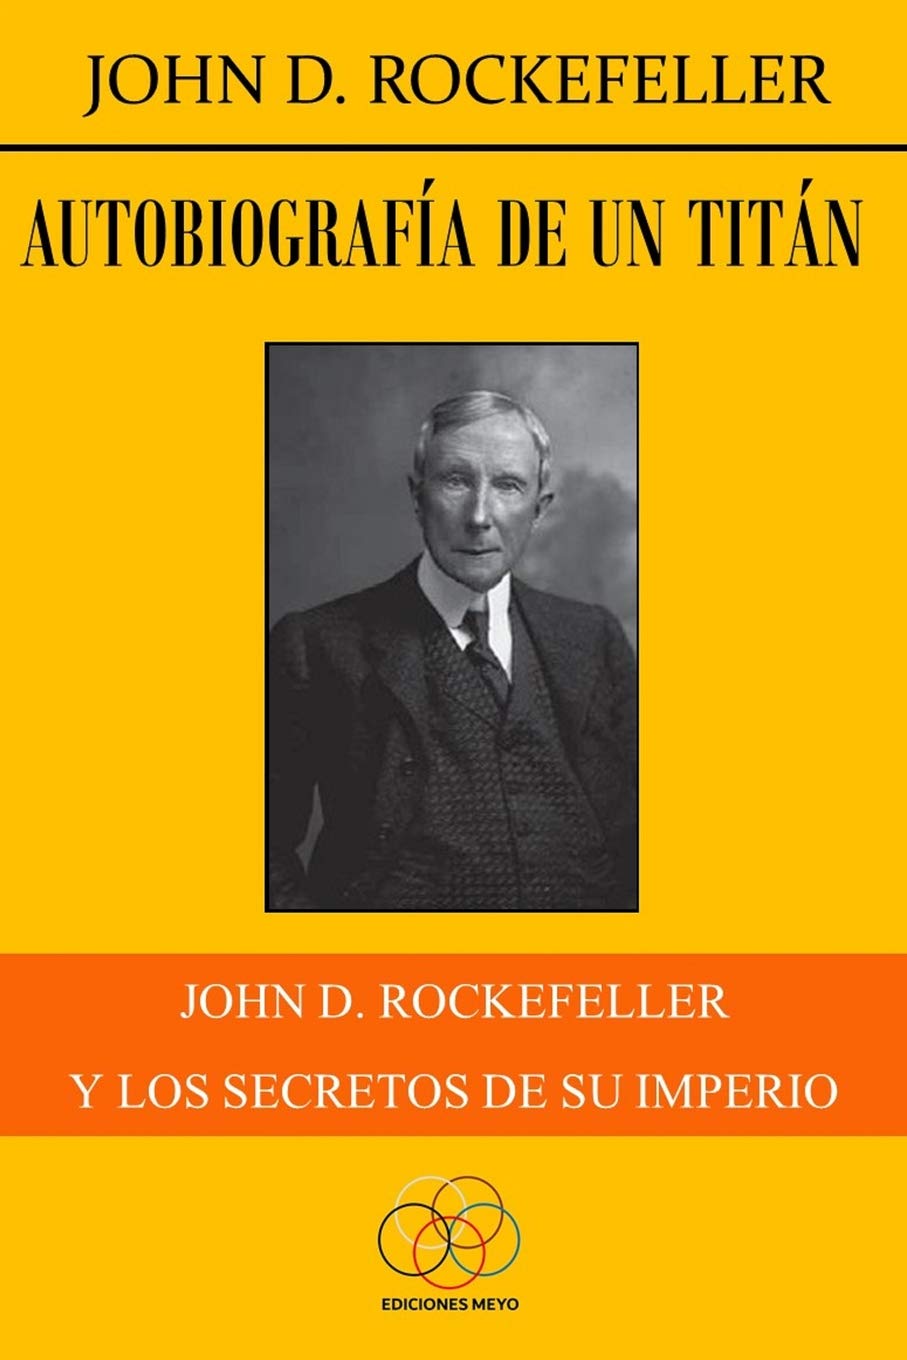 Autobiografía de un titán: John D. Rockefeller y los secretos de su imperio (Spanish Edition)